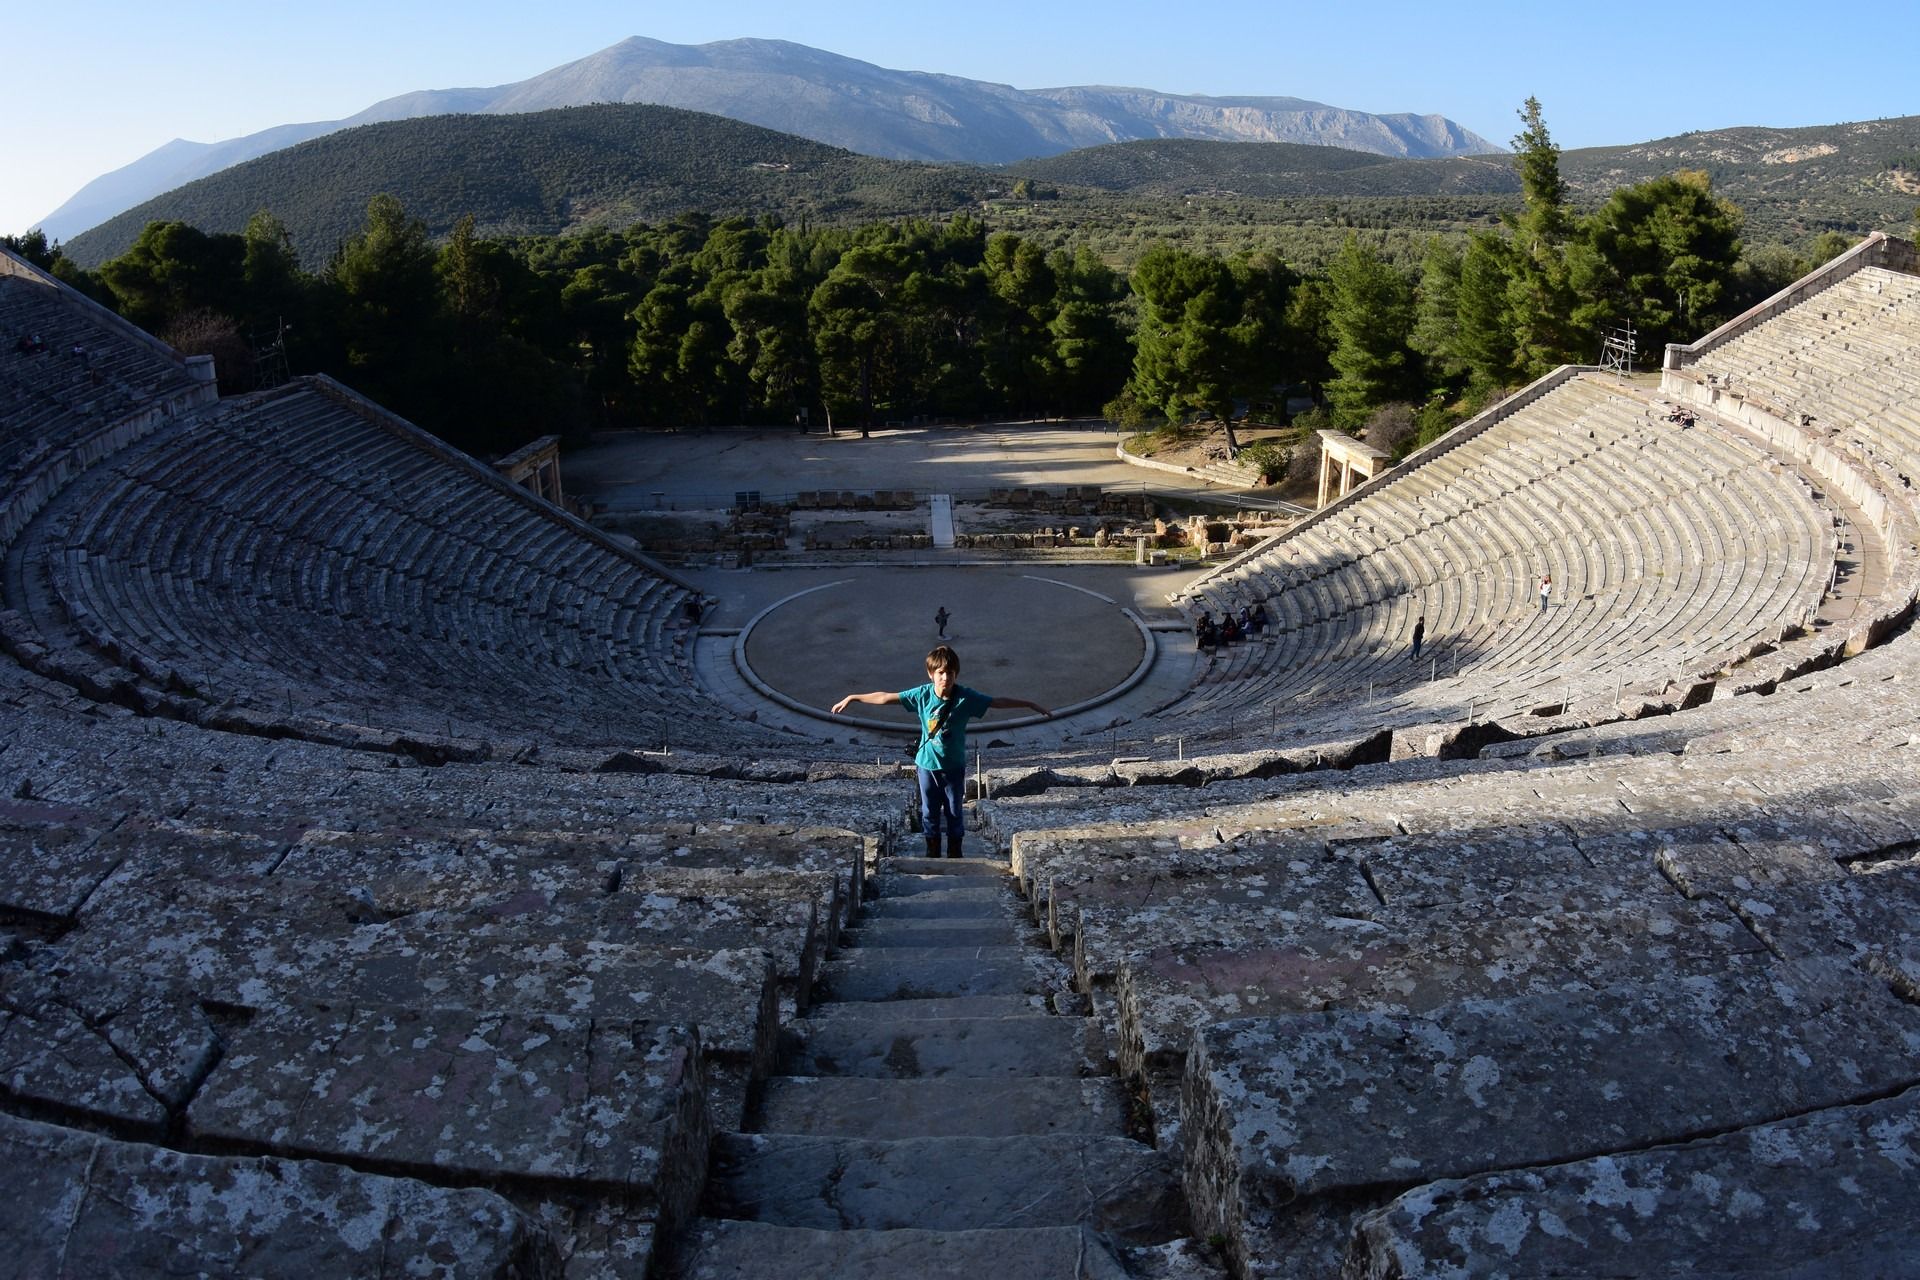 Mycenae, Tiryns and Epidauros